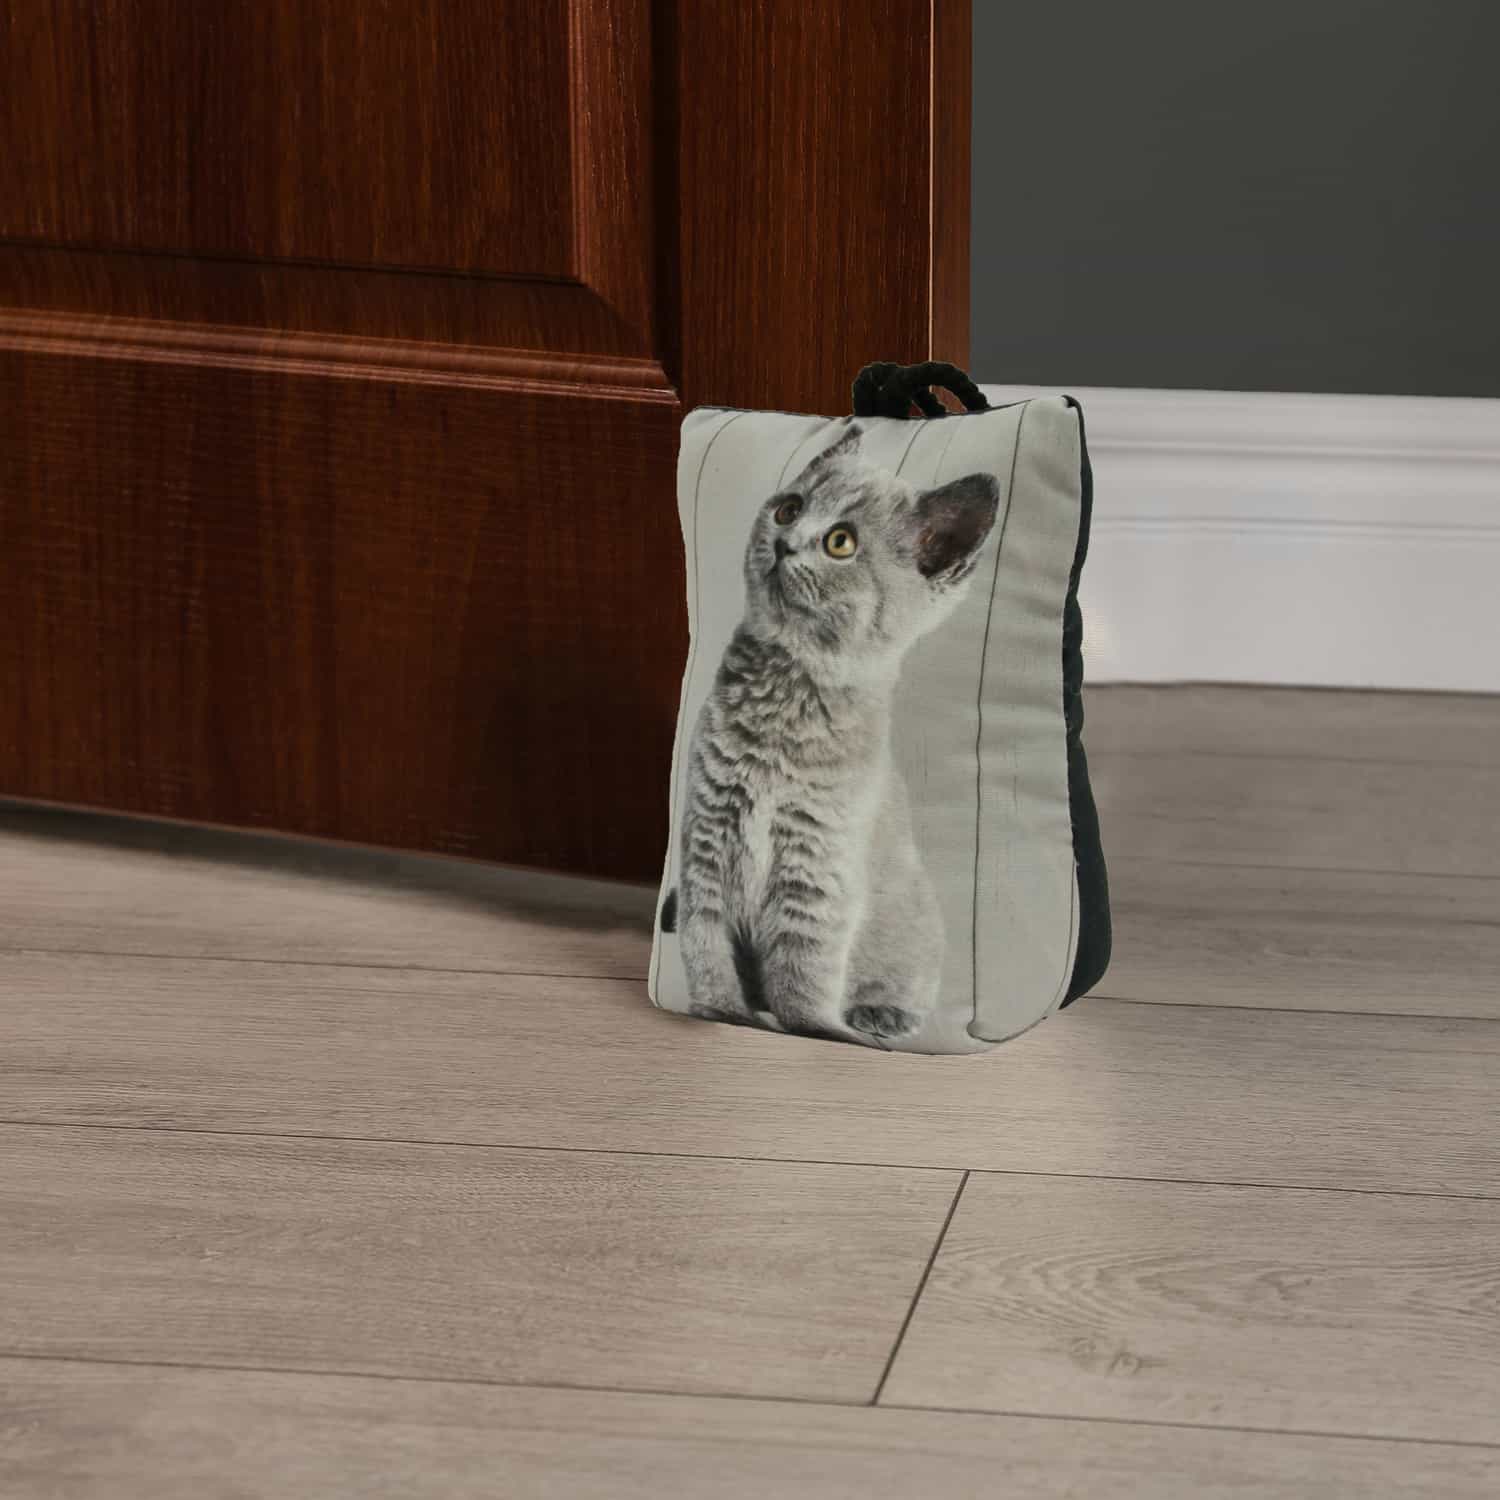 Kitten Printed Fabric Bag Door Stop Interior Weighted Floor 2.2 lbs